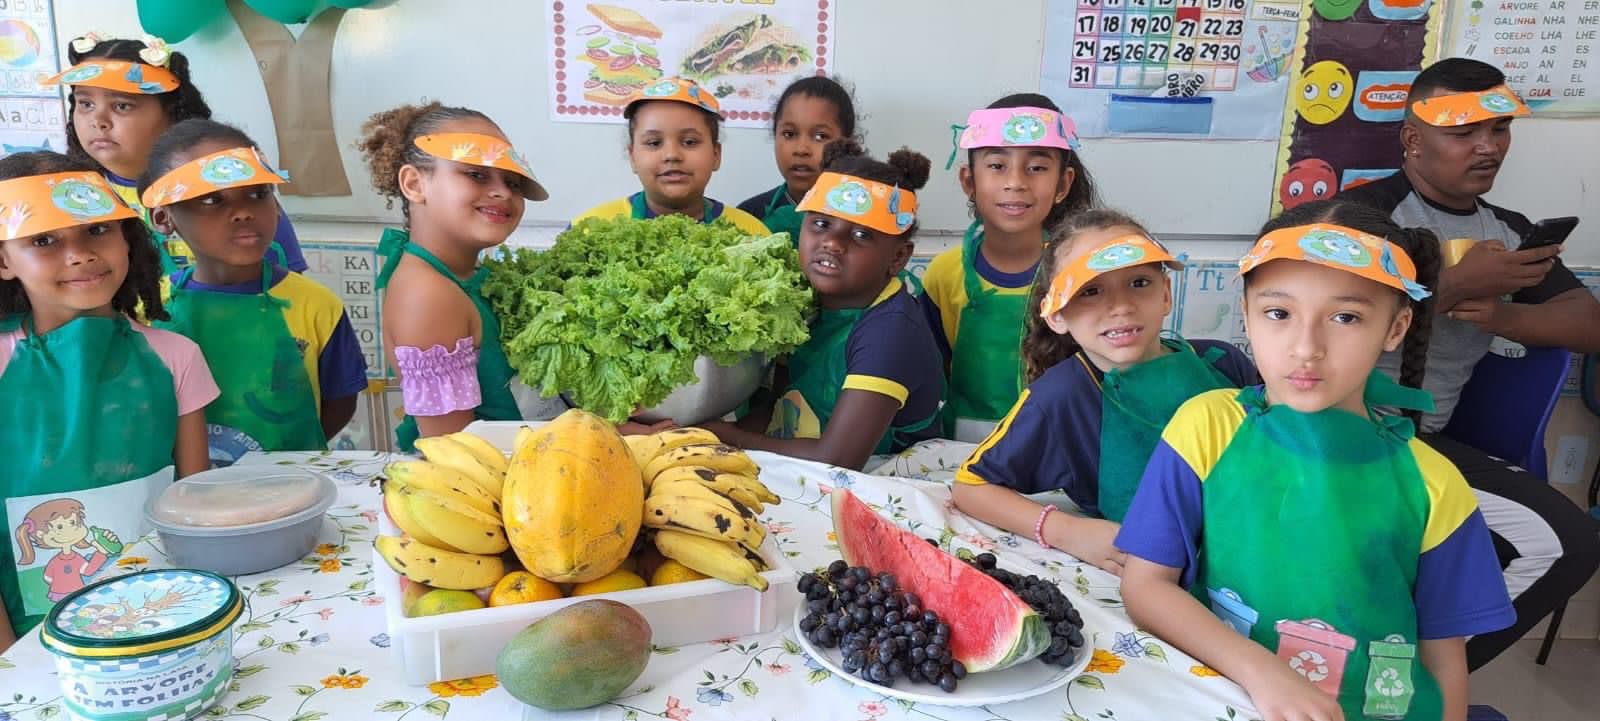 Projeto Horta nas Escolas Municipais é sucesso em Araruama, incentivando a alimentação saudável